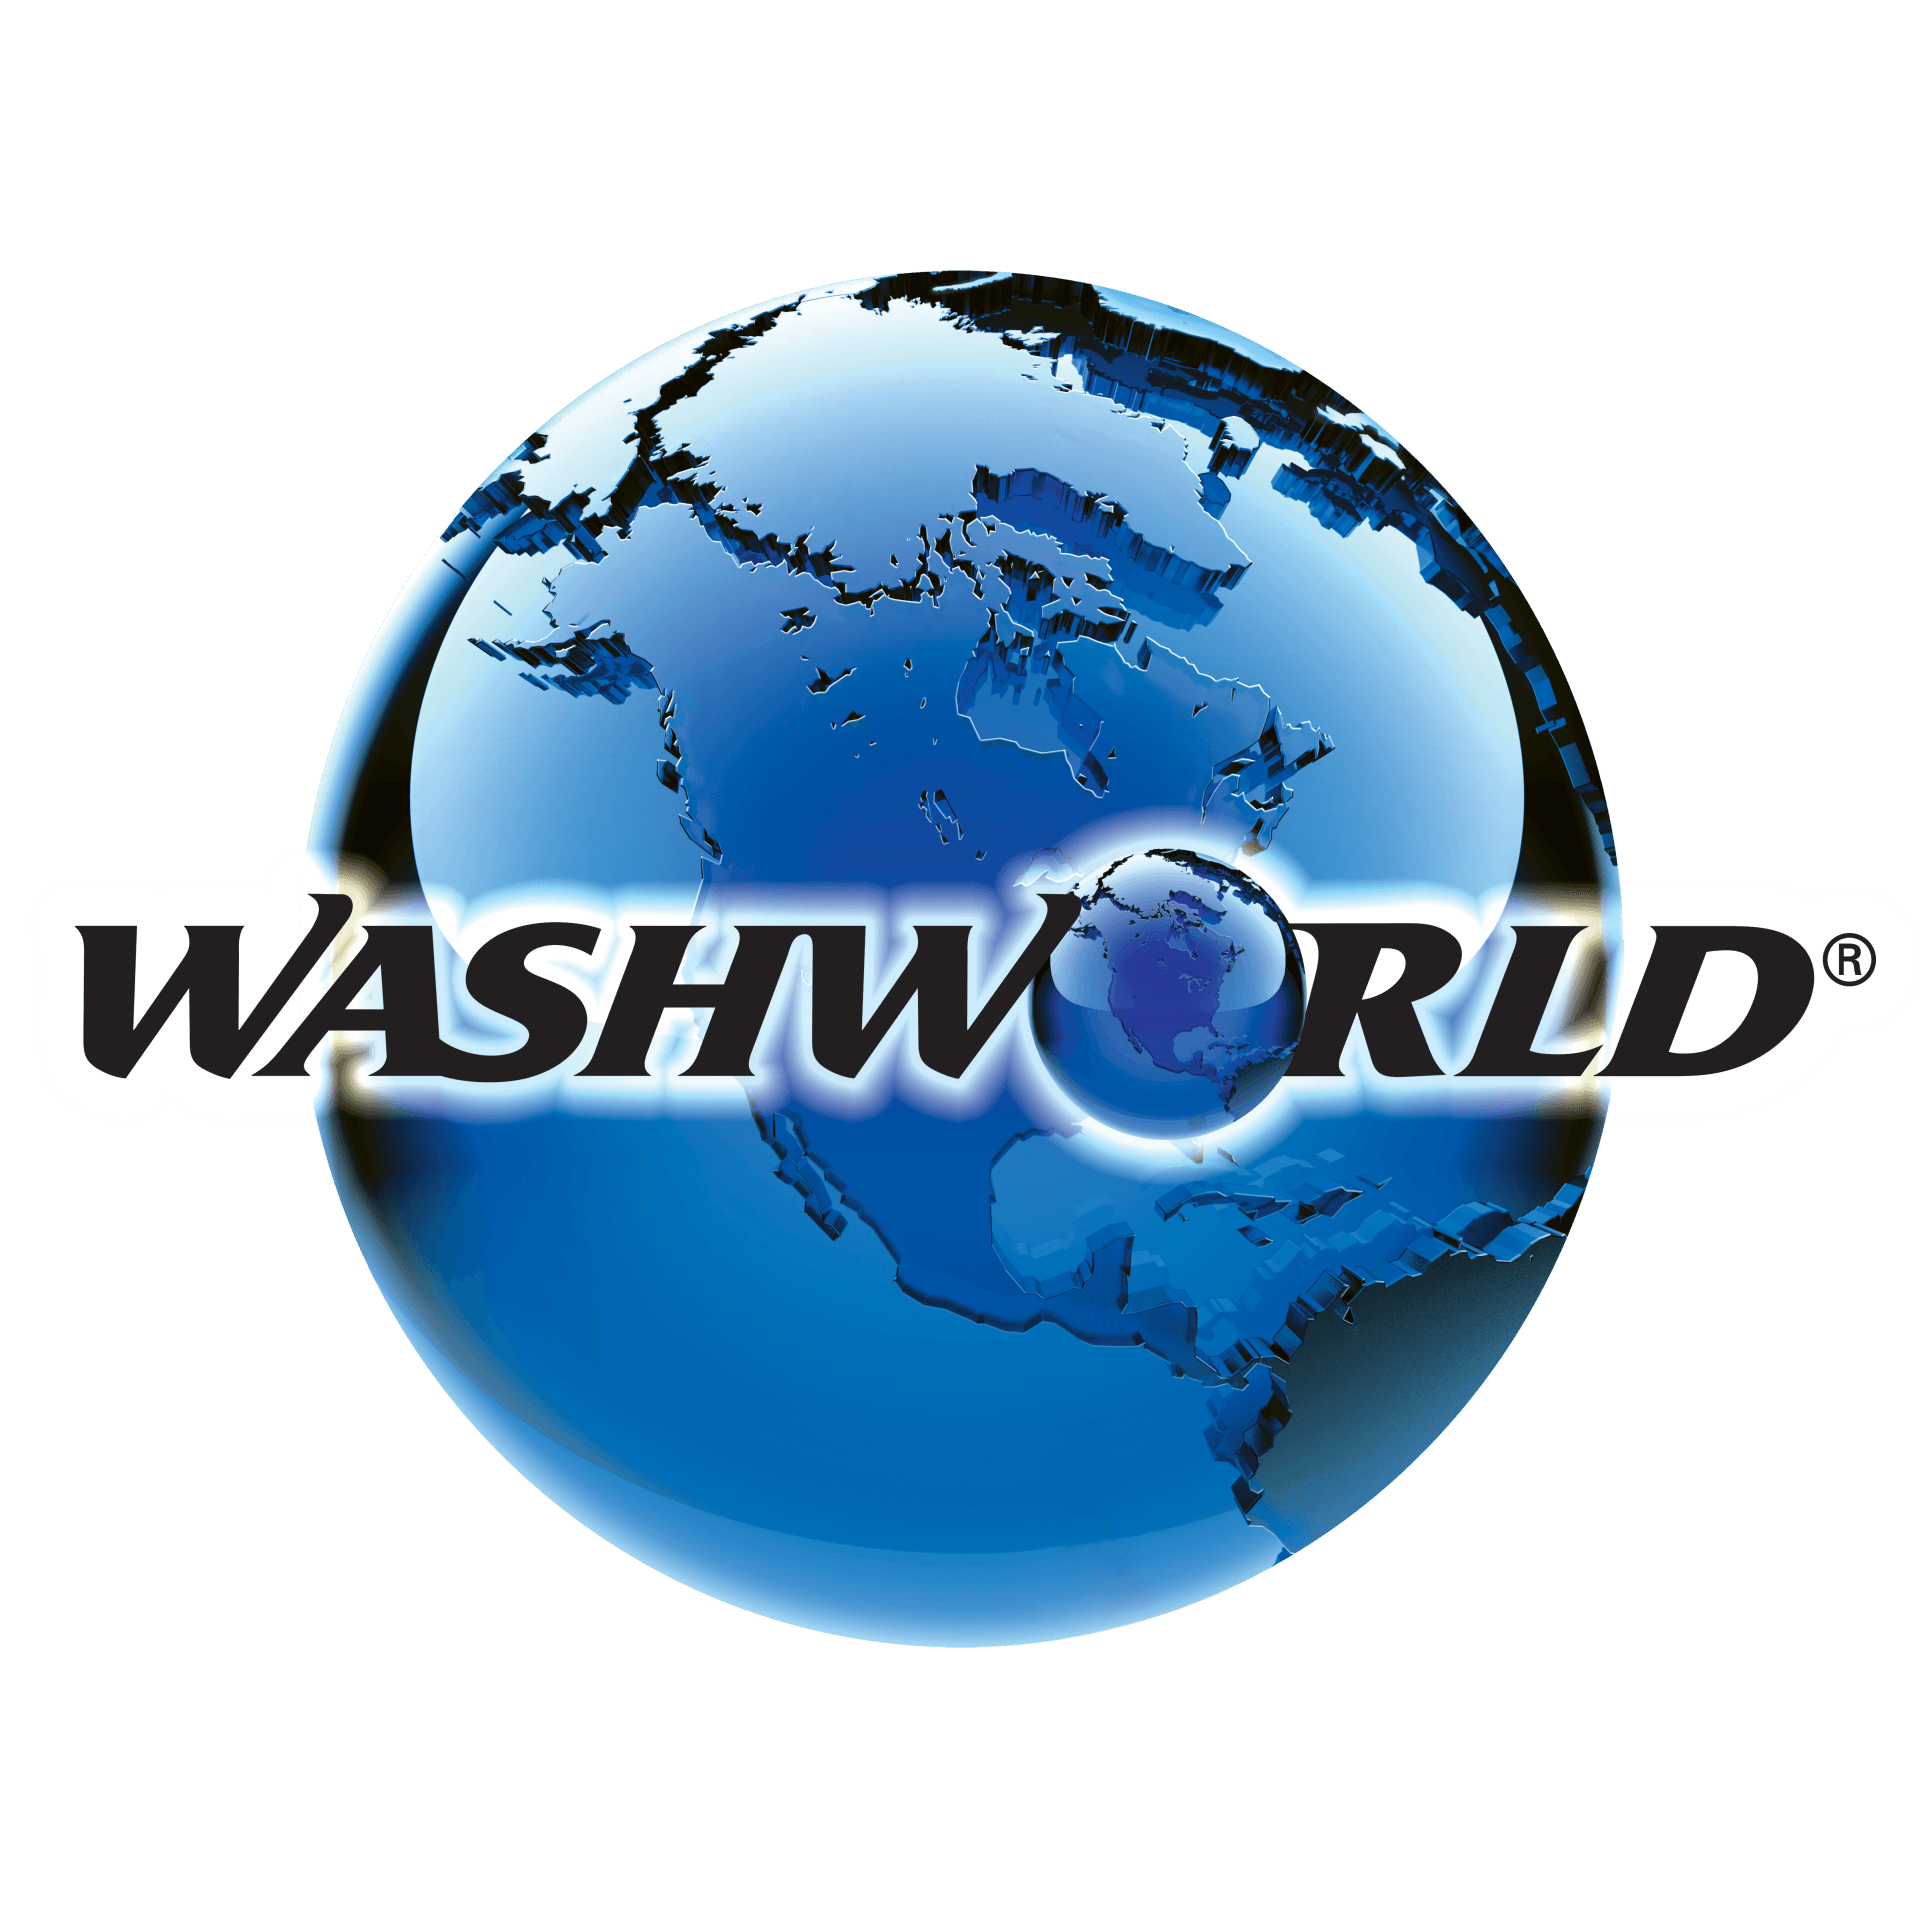 Washworld Globe Logo